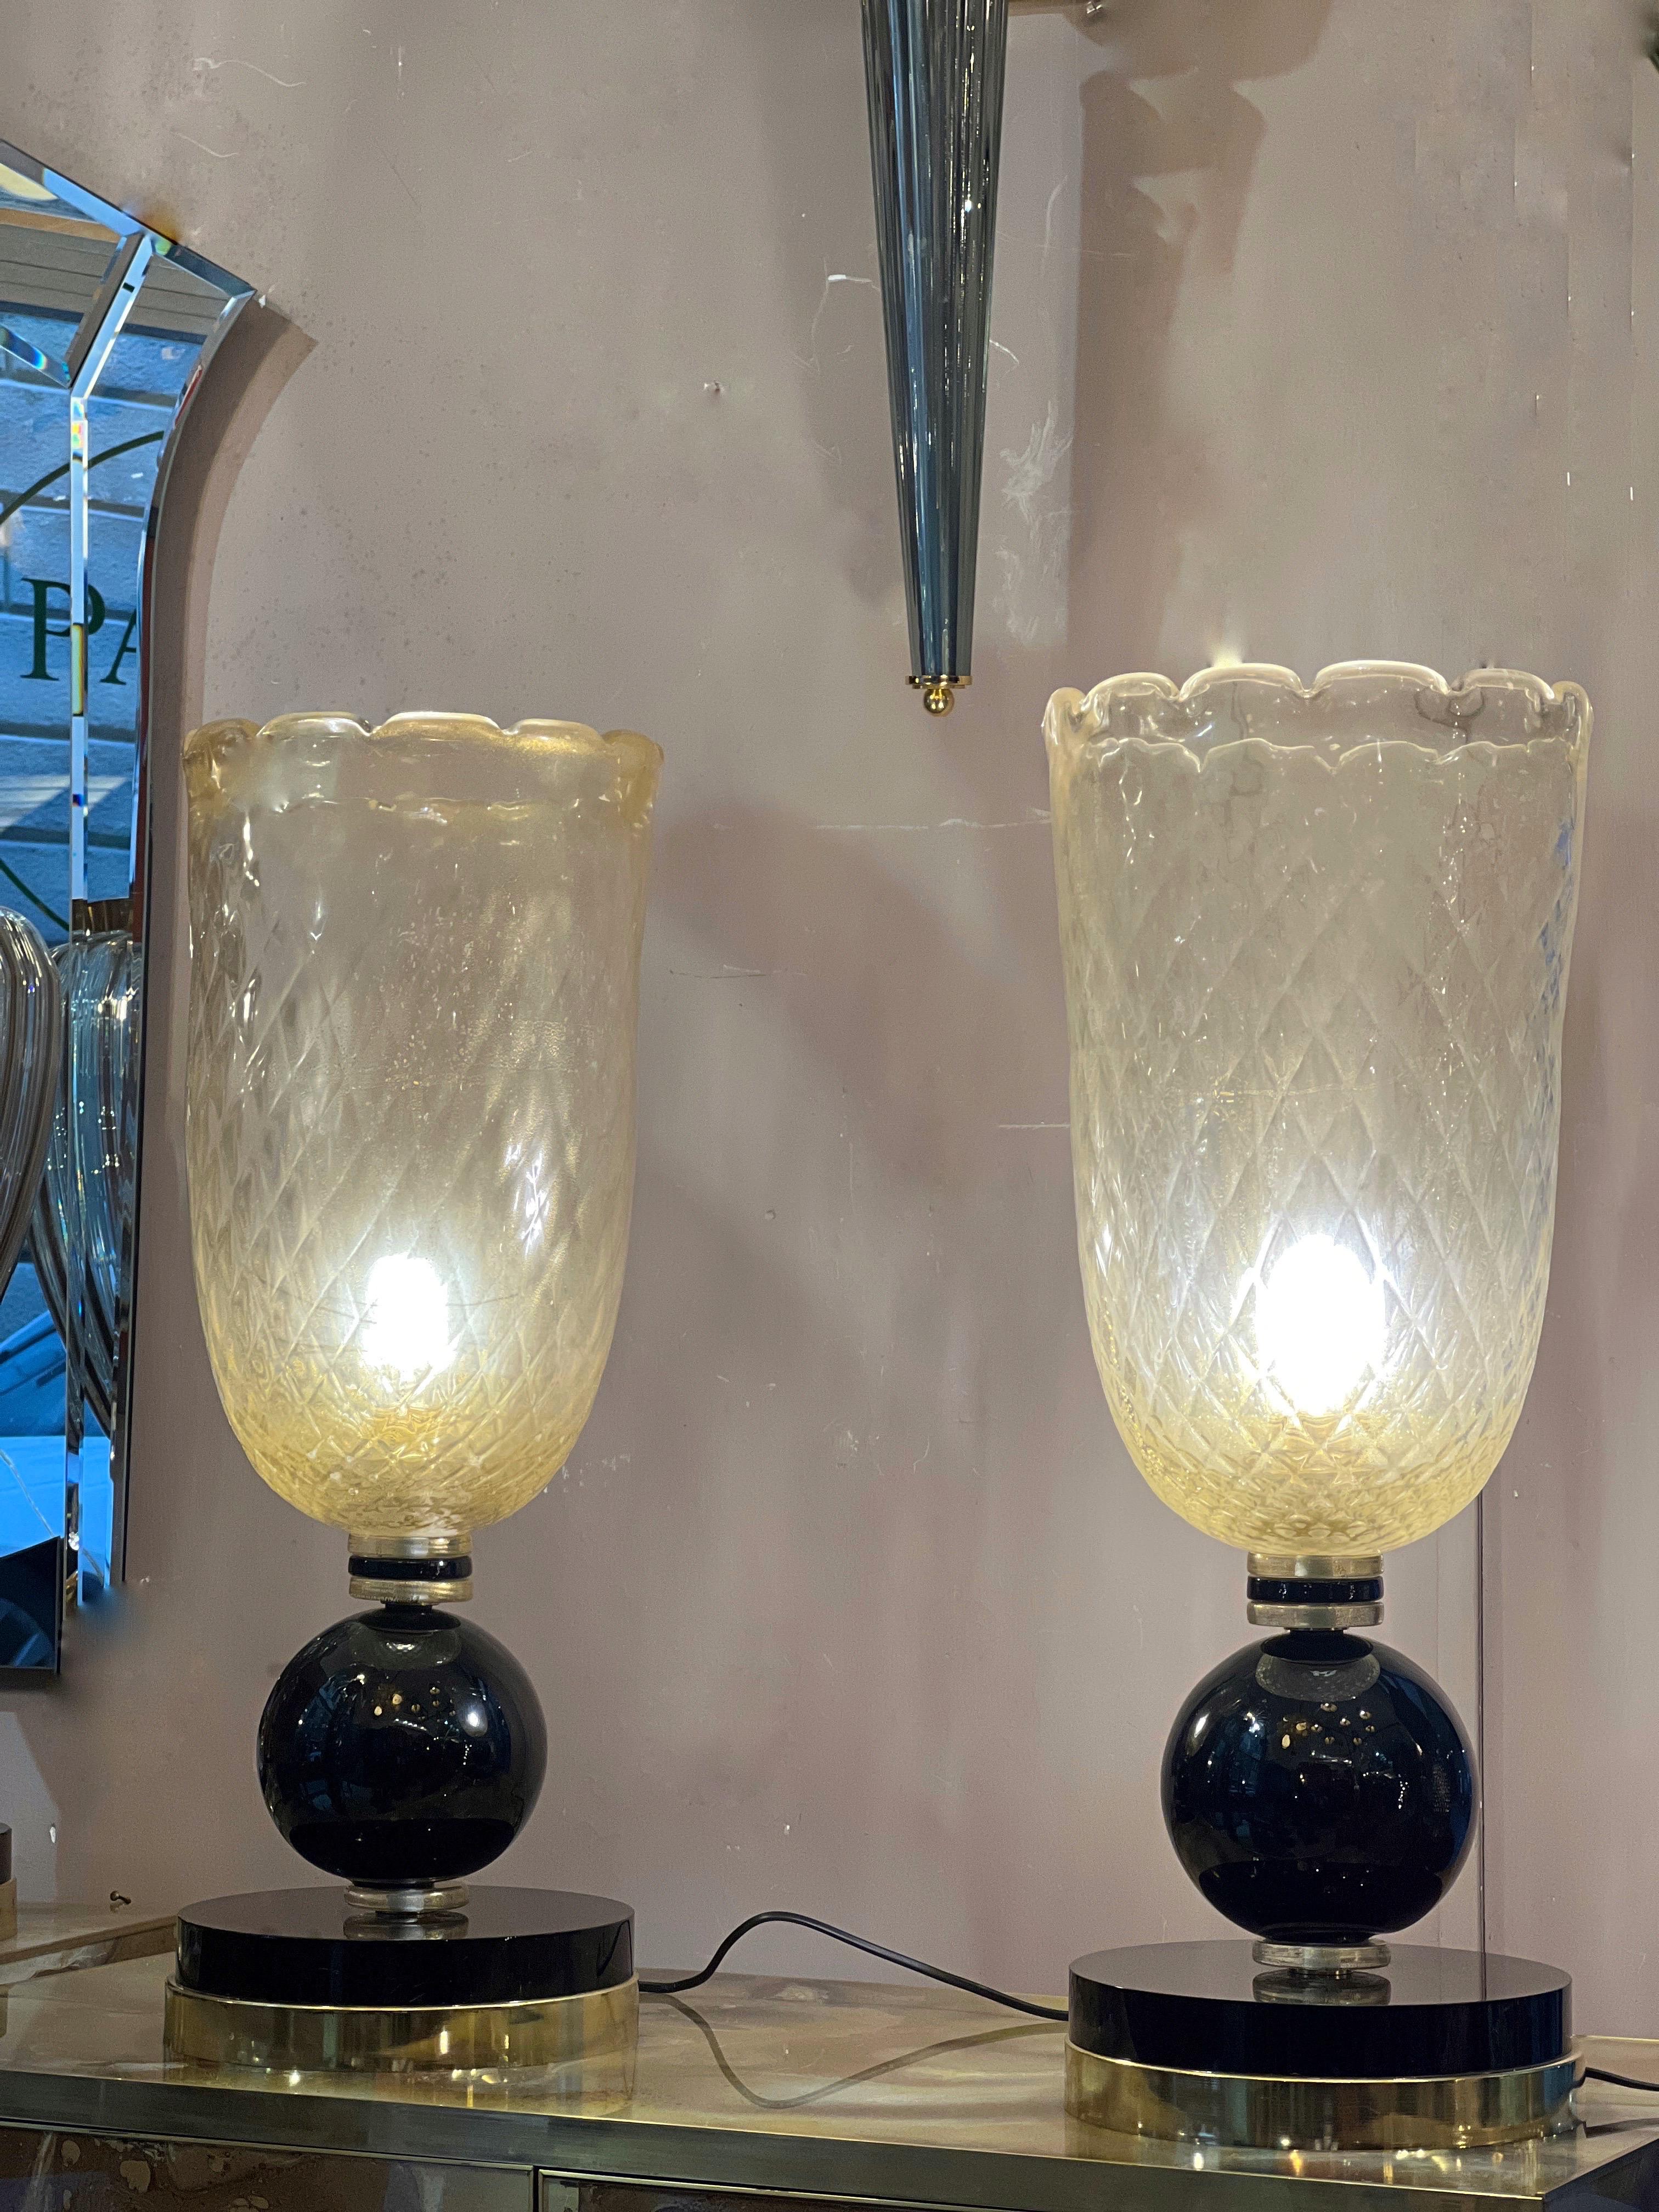 Coppia di lampade in vetro di Murano oro a coppa, con base nera rotonda. Il vetro della coppa è soffiato con l'oro zecchino e smerlato nei bordi
Una lampadina per lampada.